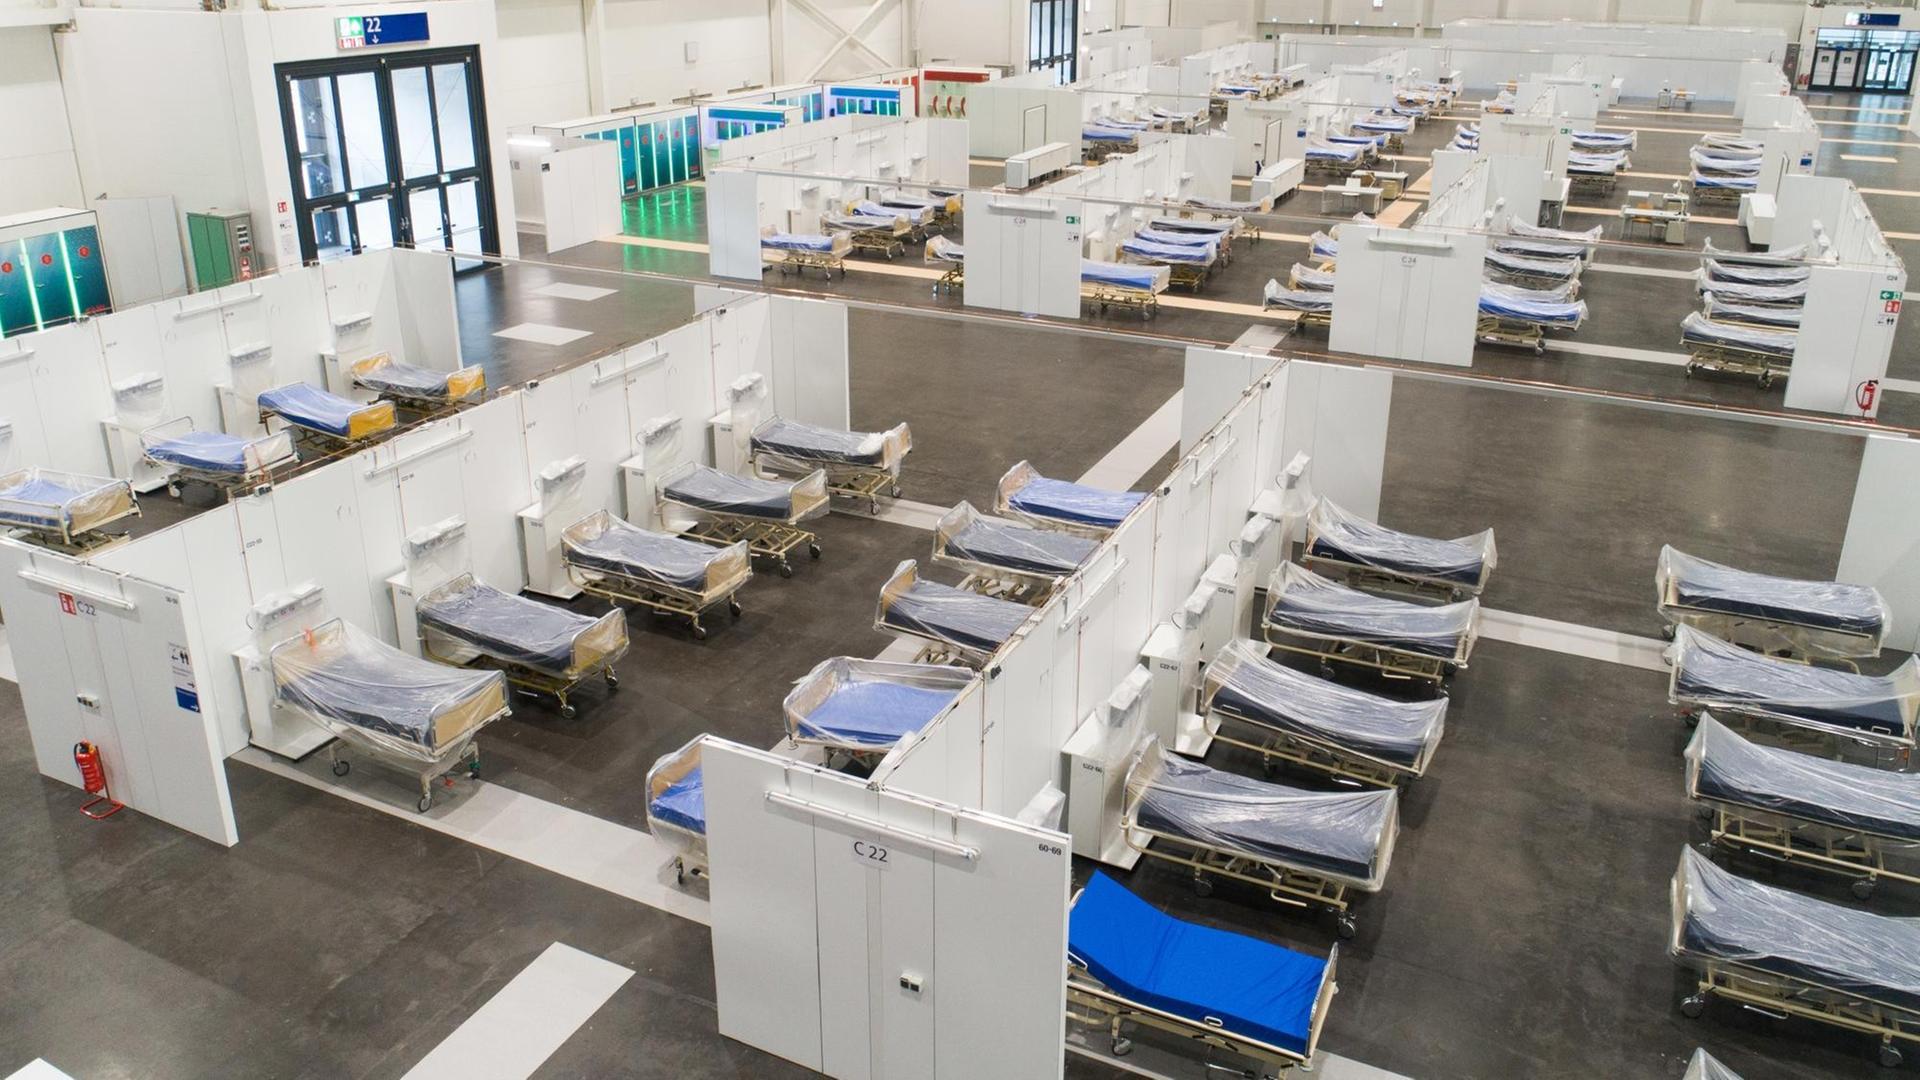 Krankenhausbetten stehen in einer Messehalle auf dem Messegelände Hannover. Seit dem Frühjahr wird für den Fall hoher Infektionszahlen mit dem Coronavirus ein Behelfskrankenhaus mit über 400 Betten vorgehalten. Im Einsatz war das Notfall-Krankenhaus bisher nicht.